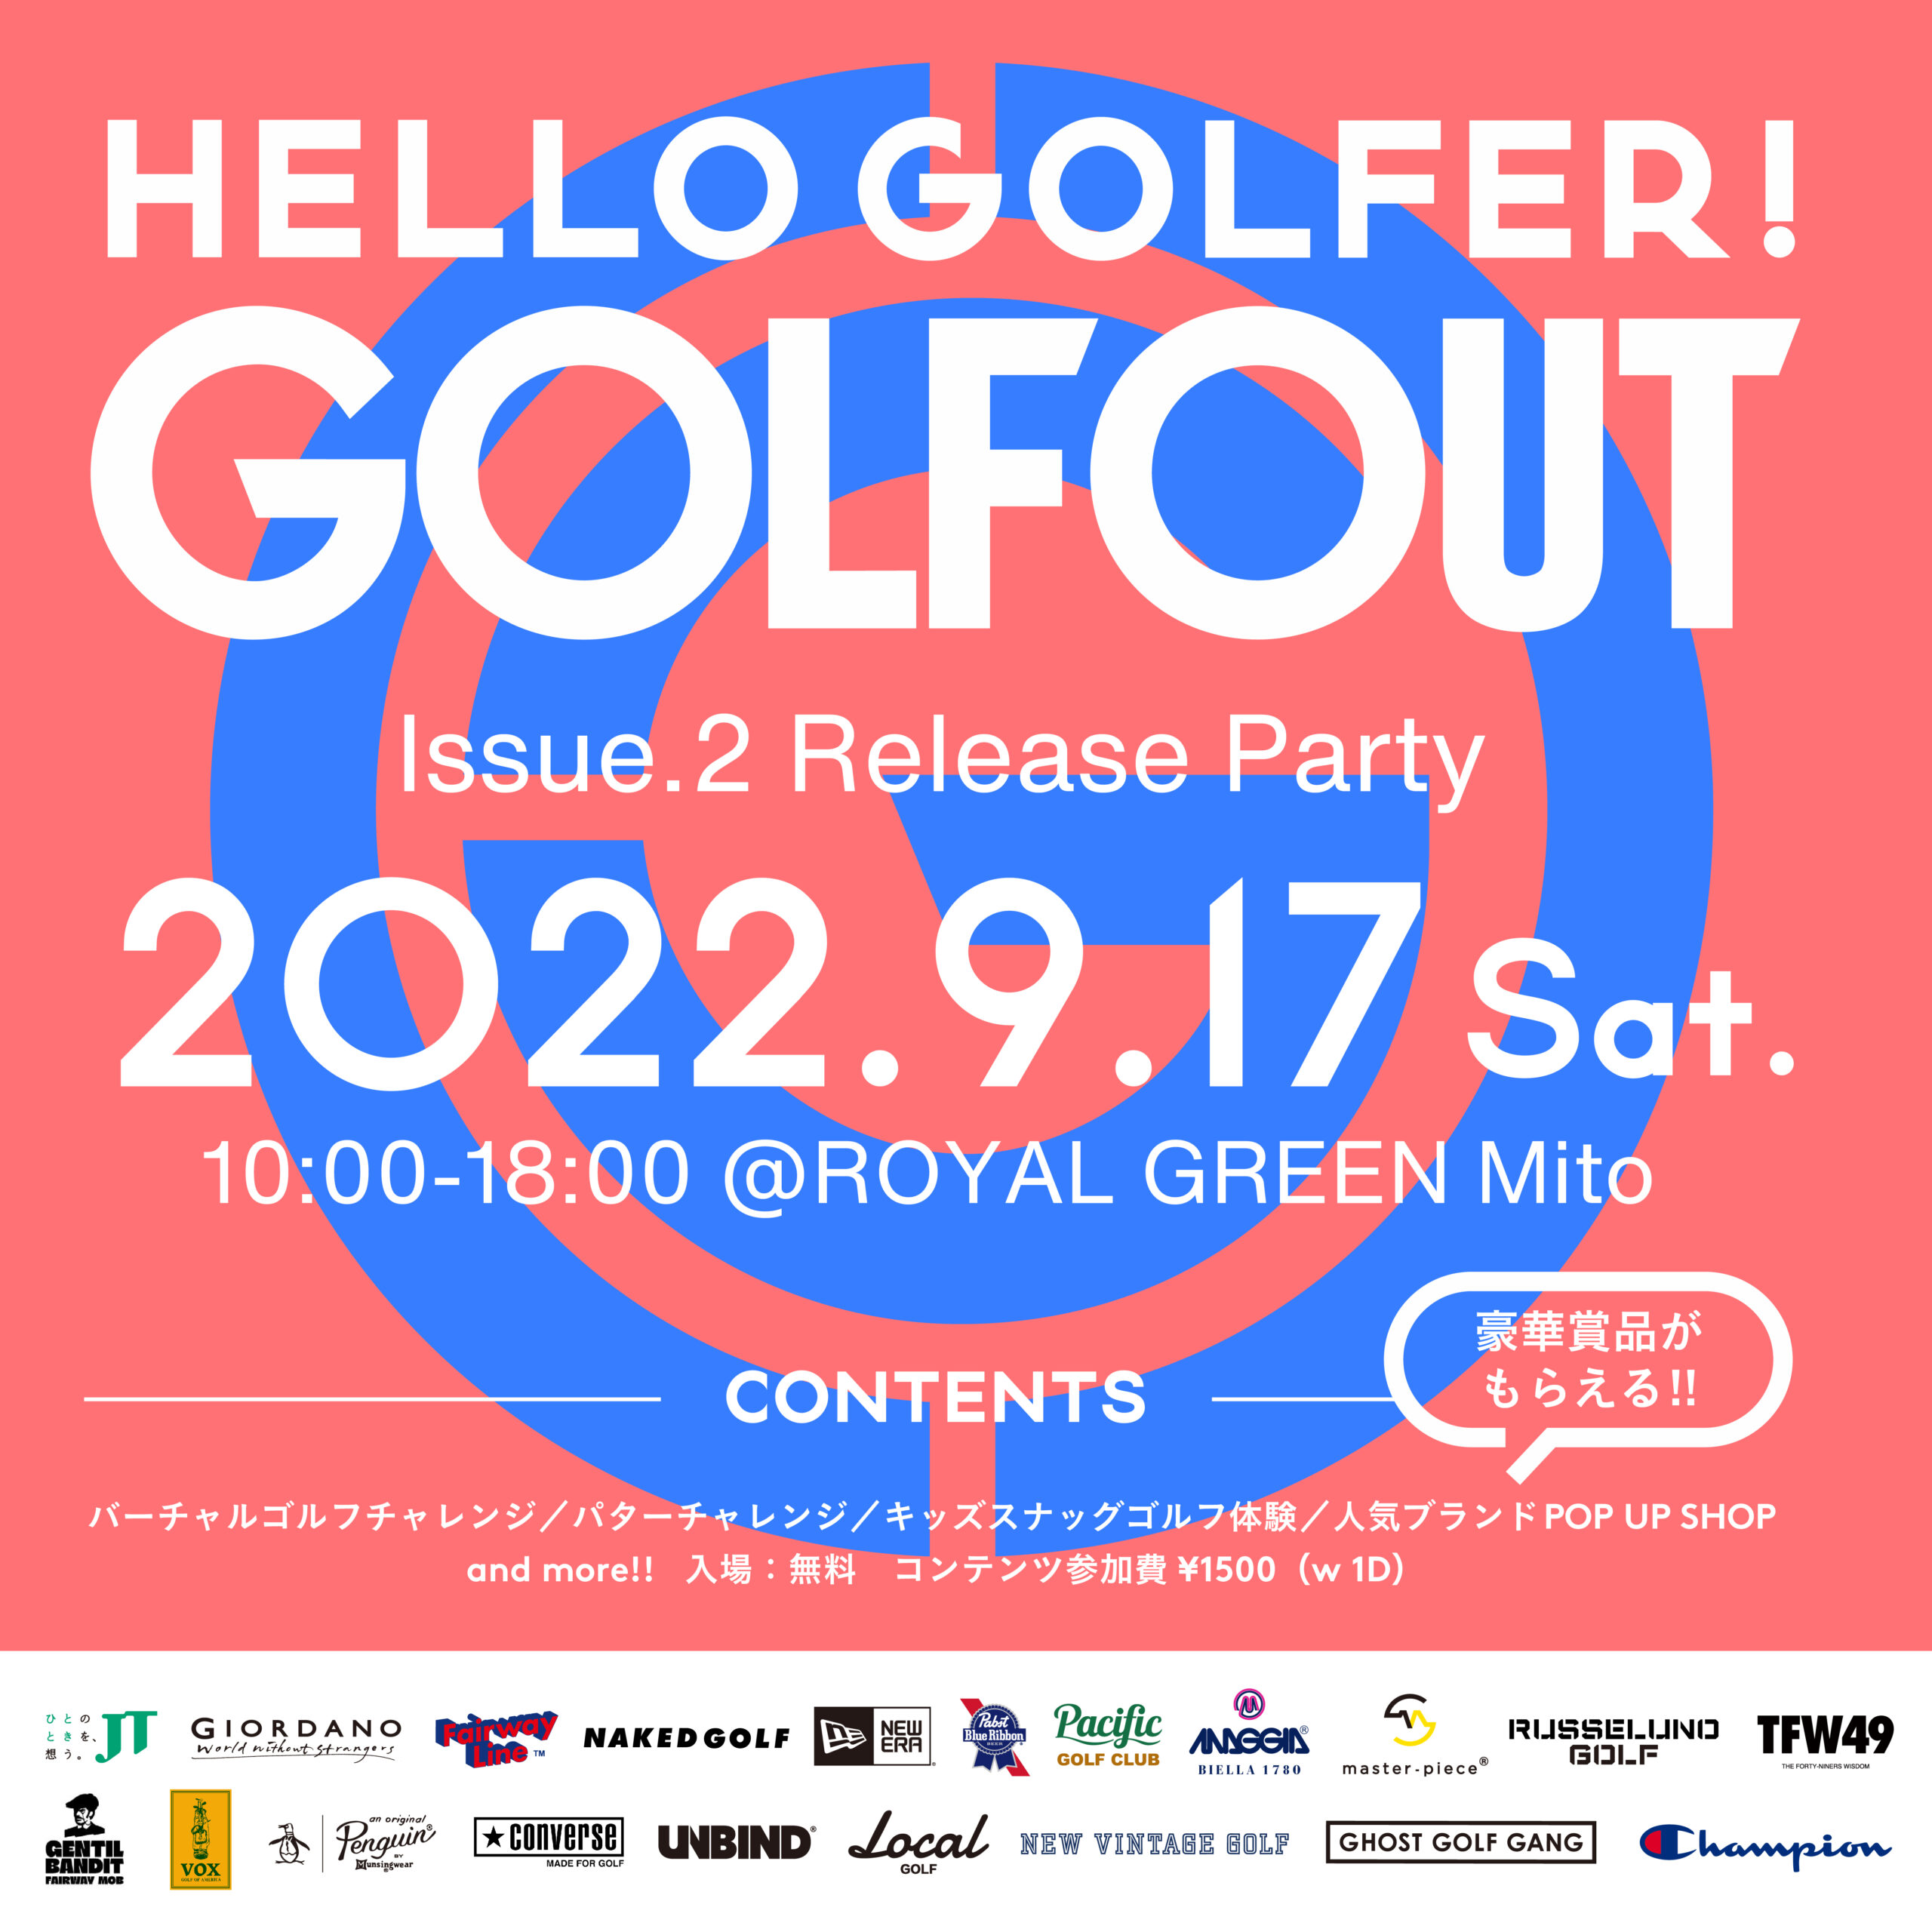 【9.17イベント開催】GOLF OUT issue.2 Release Party